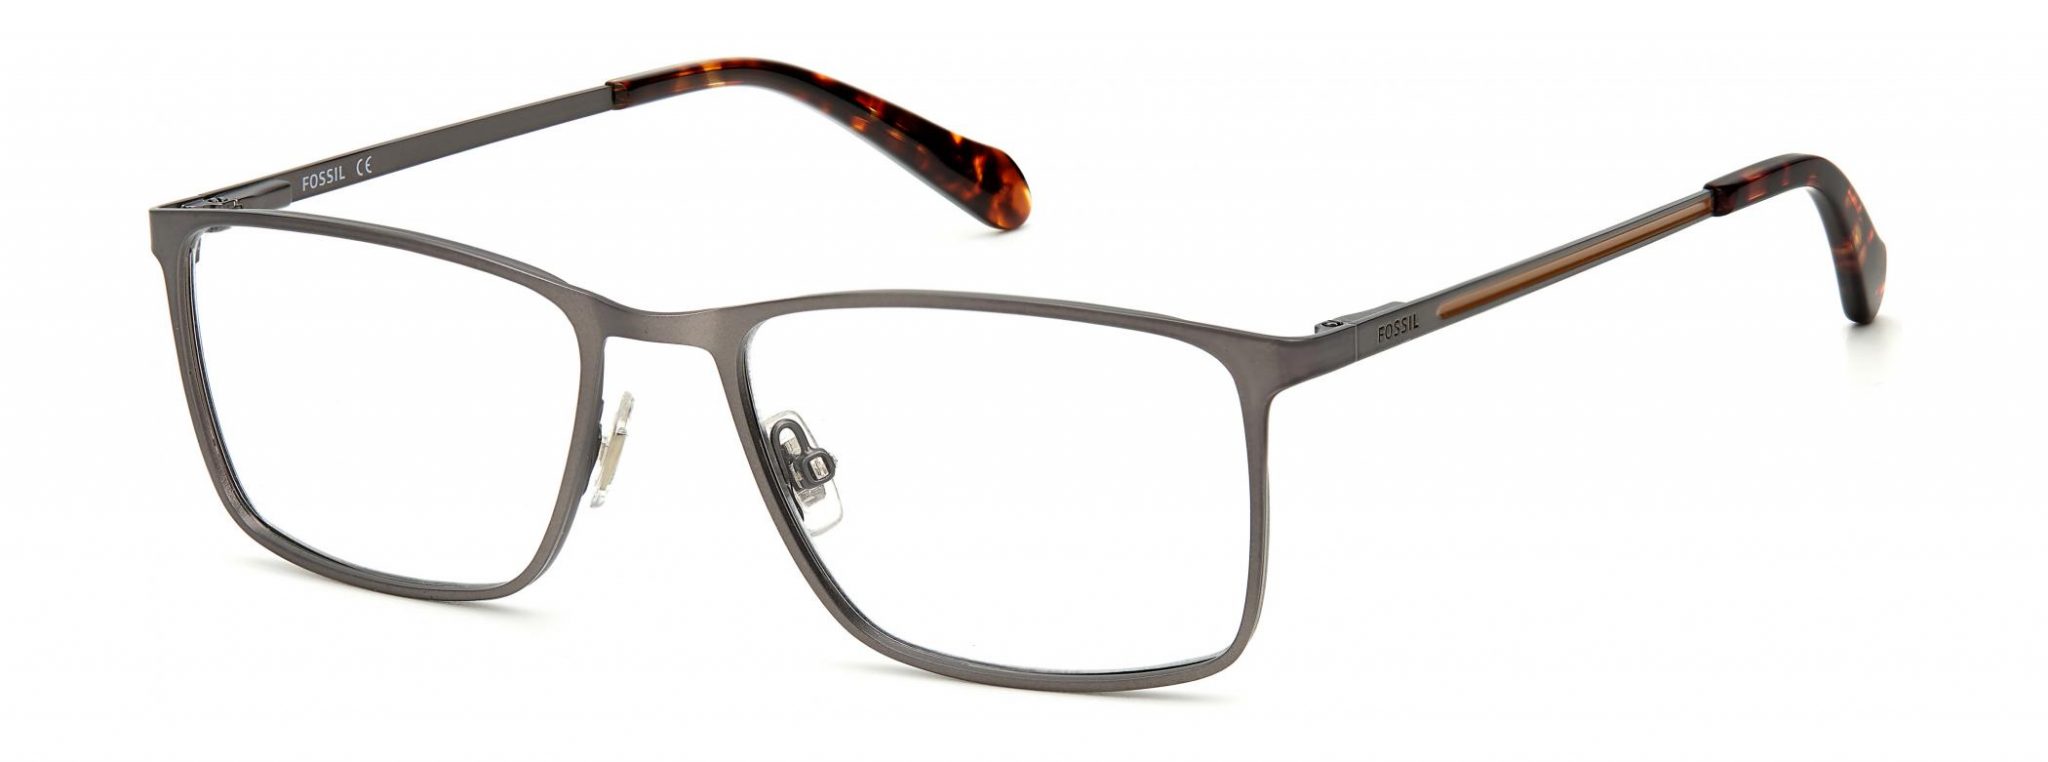 Forever Fashionable: Rectangular Eyeglass Frames - EZOnTheEyes